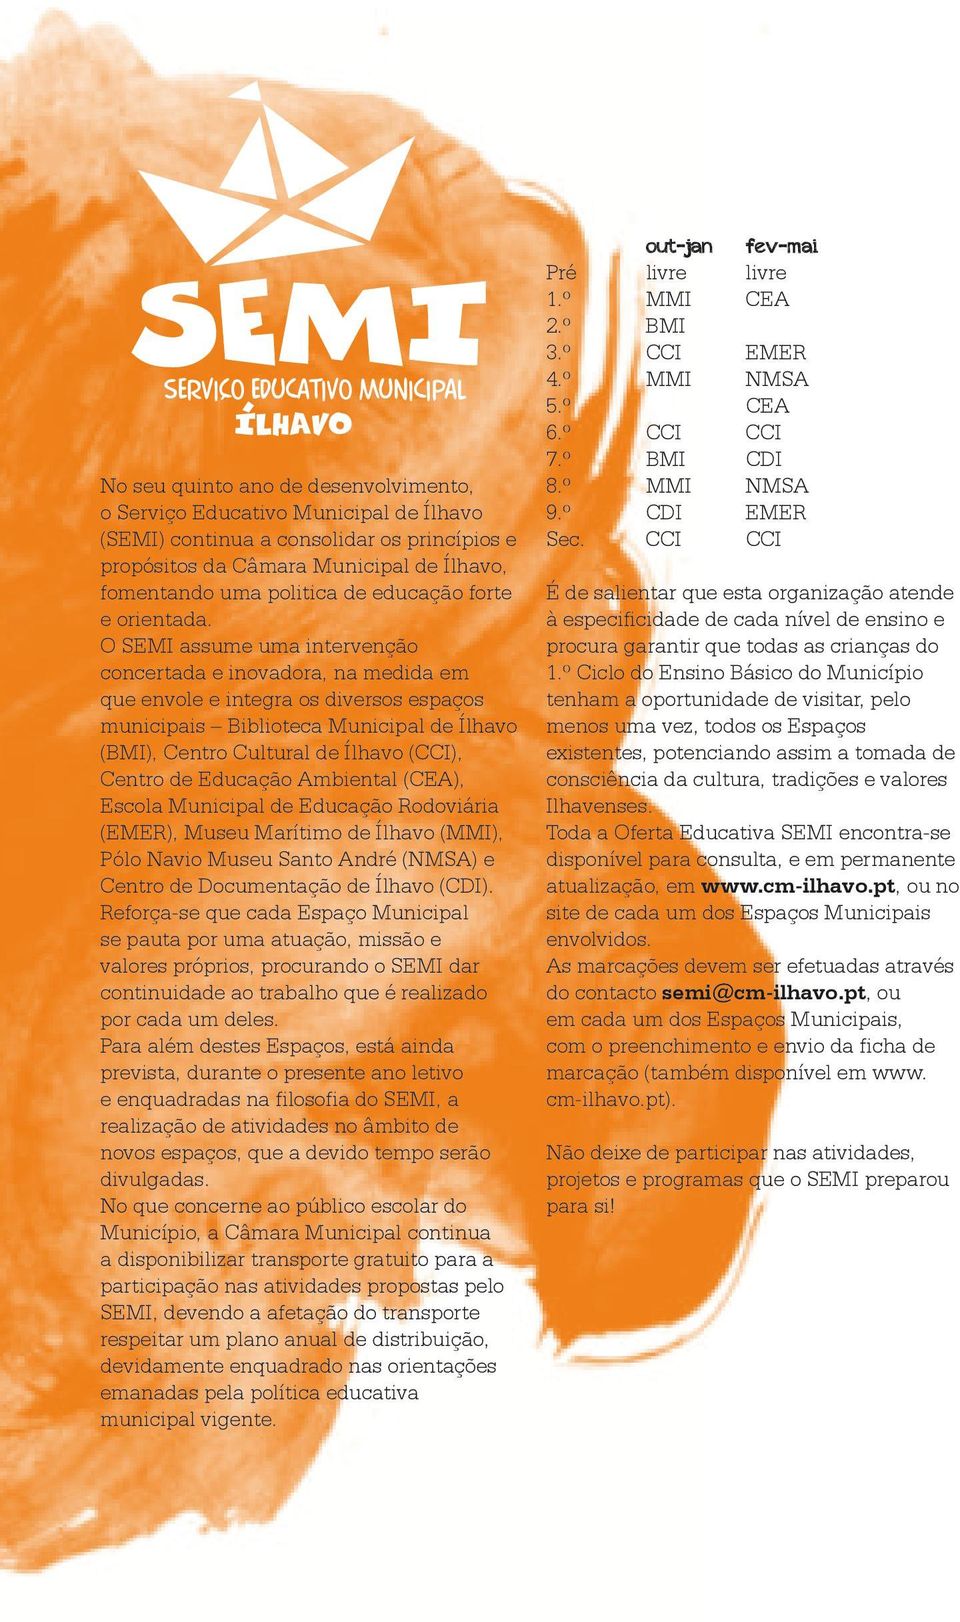 O SEMI assume uma intervenção concertada e inovadora, na medida em que envole e integra os diversos espaços municipais Biblioteca Municipal de Ílhavo (BMI), Centro Cultural de Ílhavo (CCI), Centro de